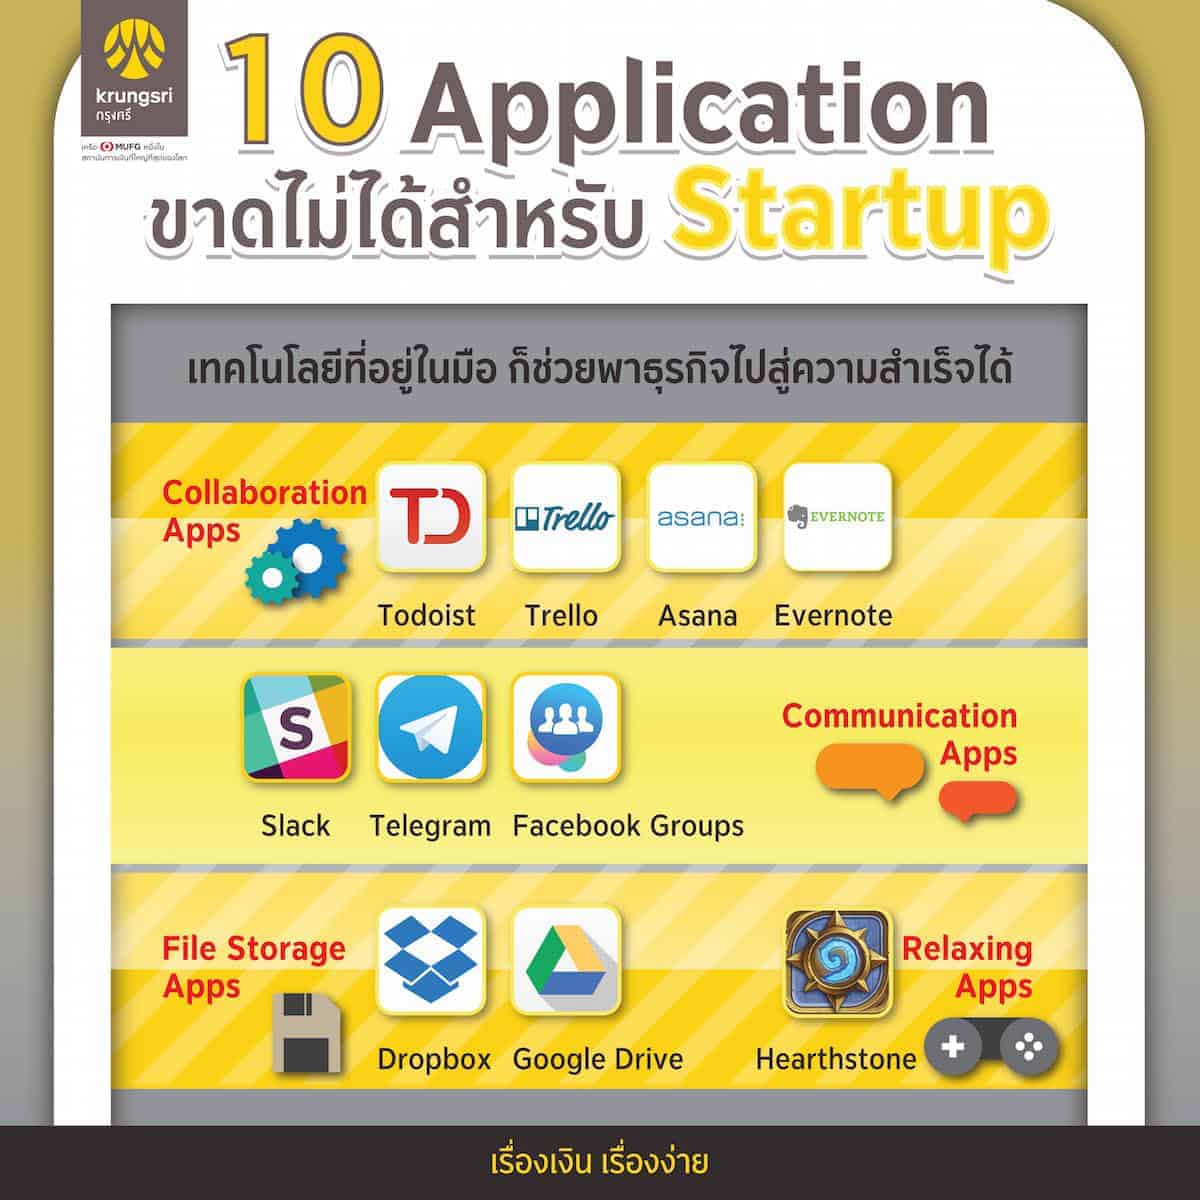 Krungsri Bank Application Startup